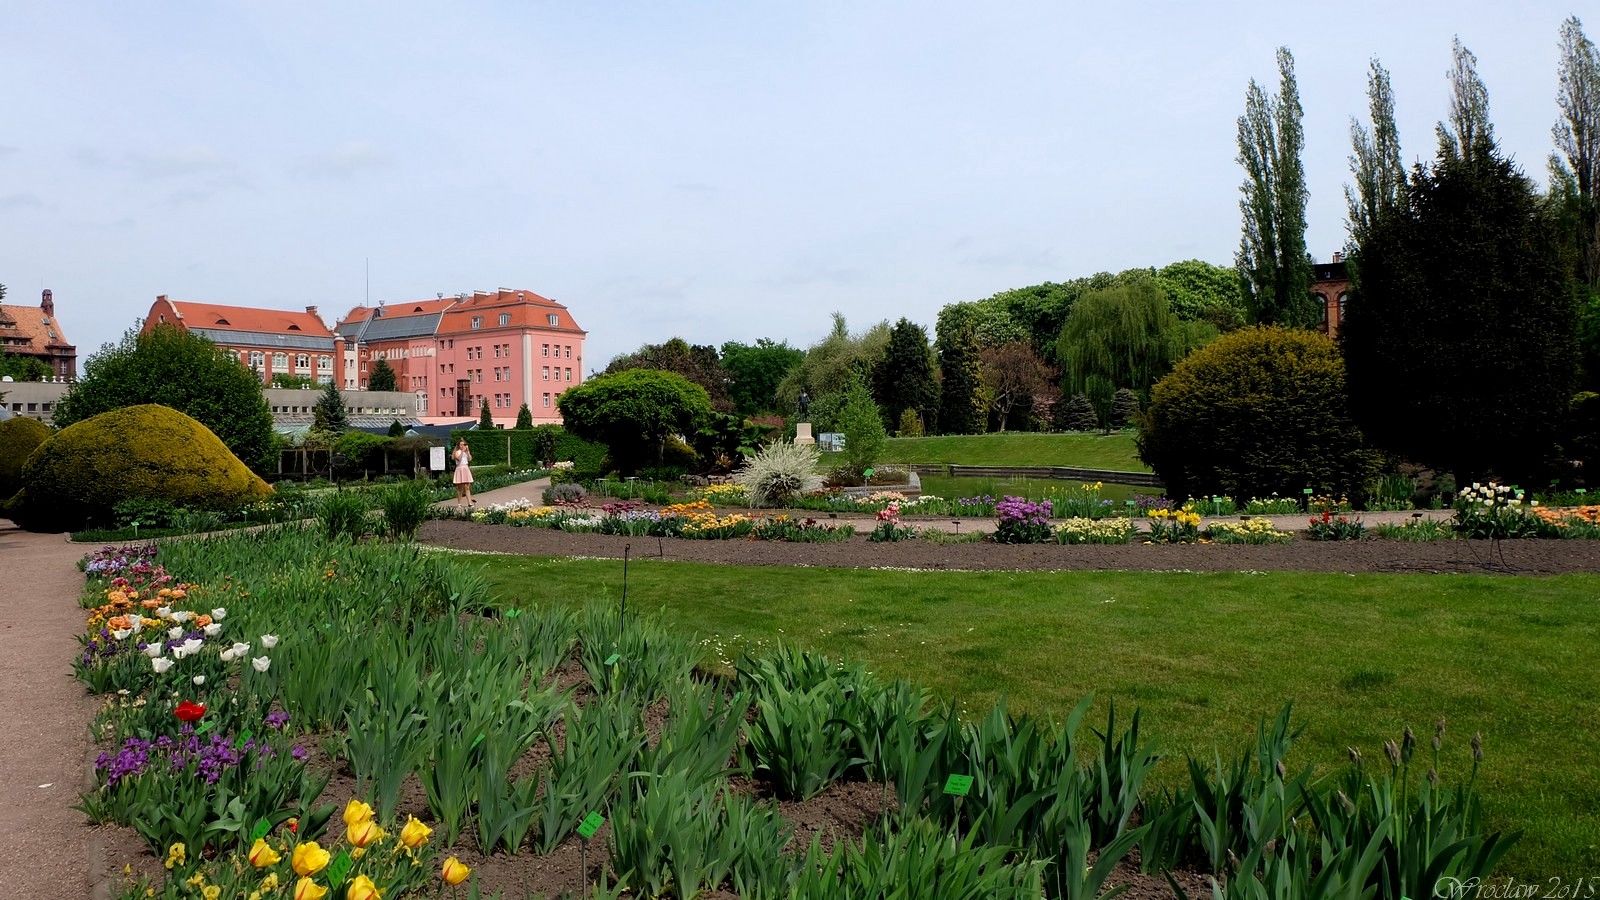 Ogród Botaniczny Uniwersytetu Wrocławskiego, Wroclaw, Poland